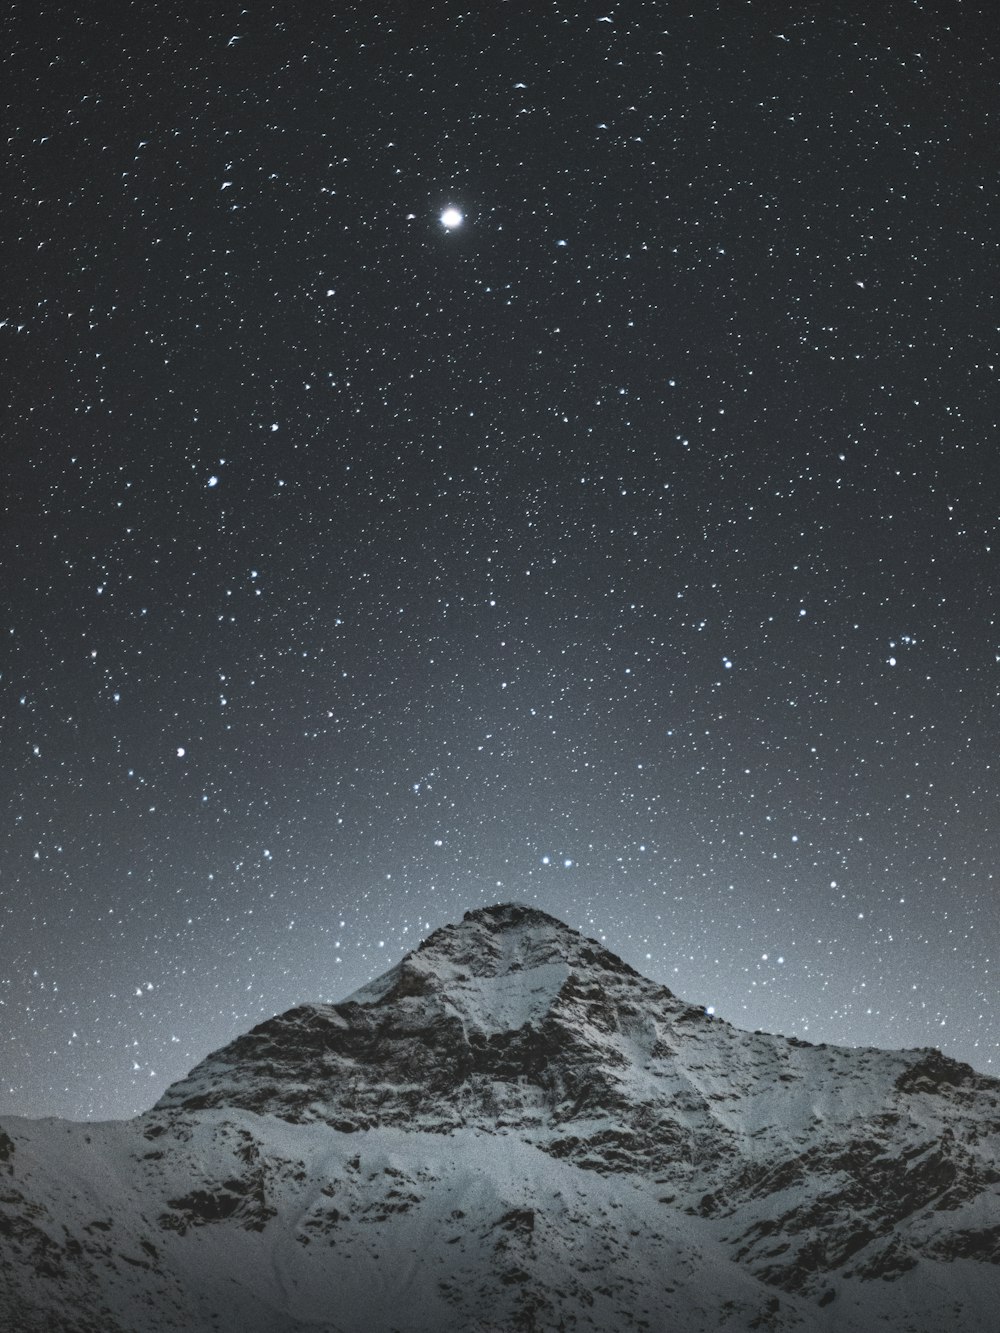 montagne enneigée sous la nuit étoilée